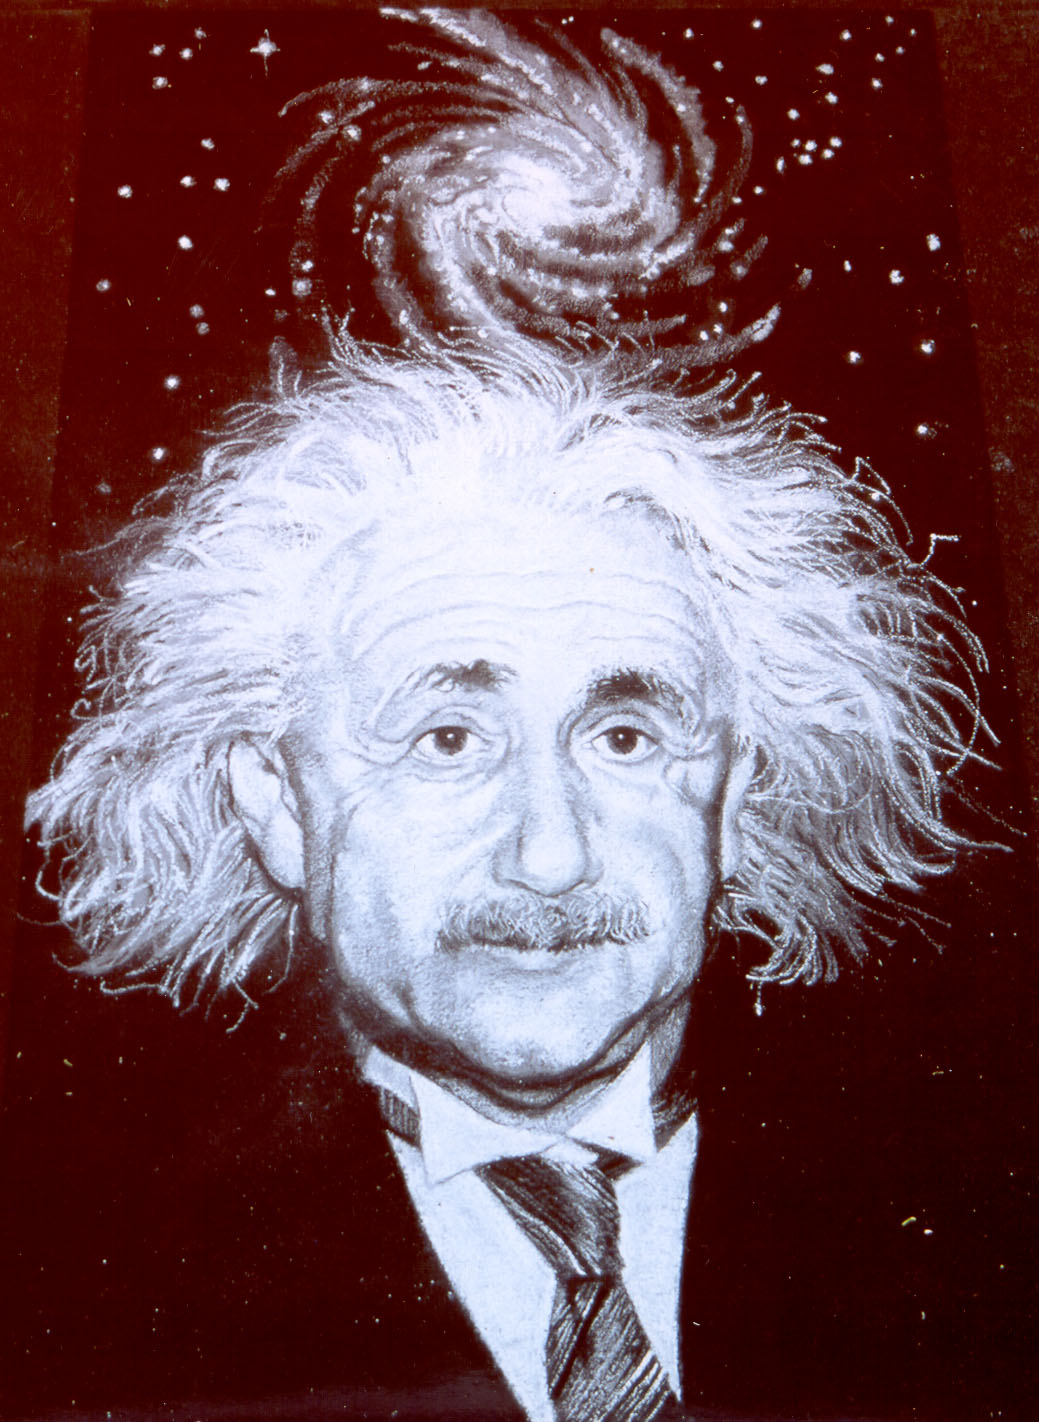 Chalk drawing of Albert Einstein